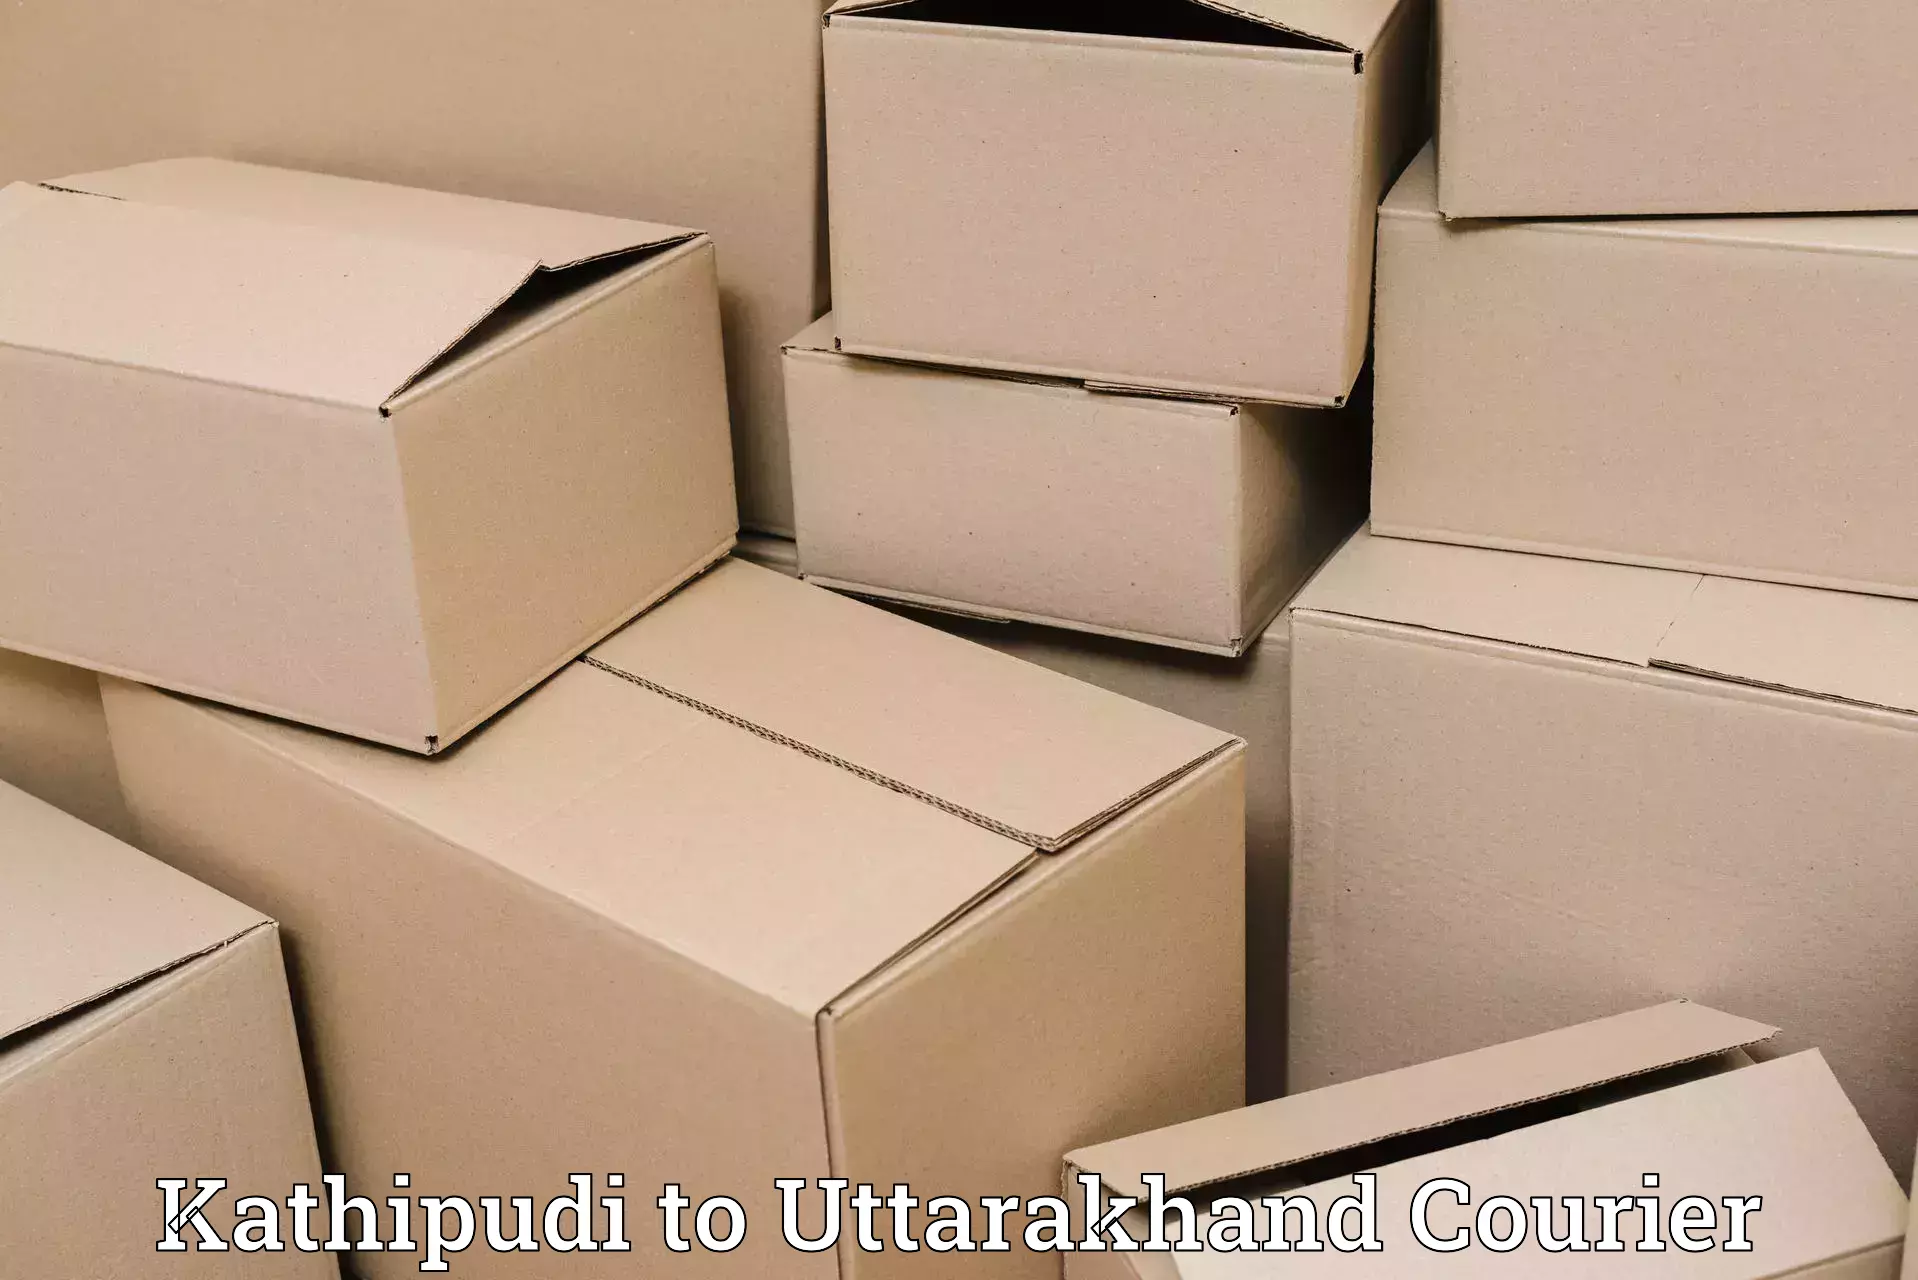 Individual parcel service Kathipudi to Uttarakhand